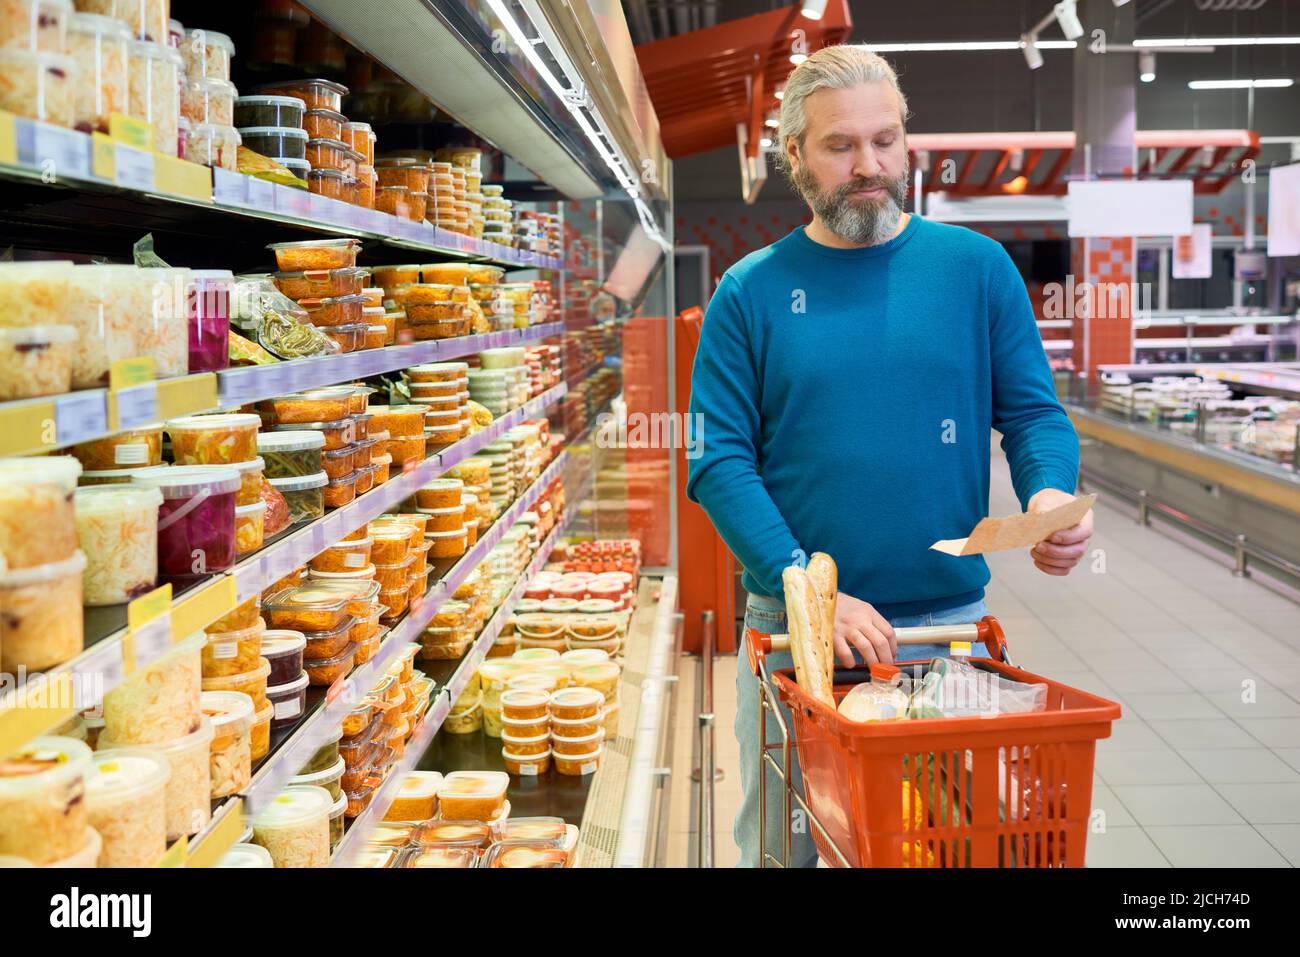 Moderner reifer Mann in Casualwear, der auf die Einkaufsliste schaut, während er sich zwischen den Displays entlang bewegt und den Wagen mit Lebensmittelprodukten schiebt Stockfoto